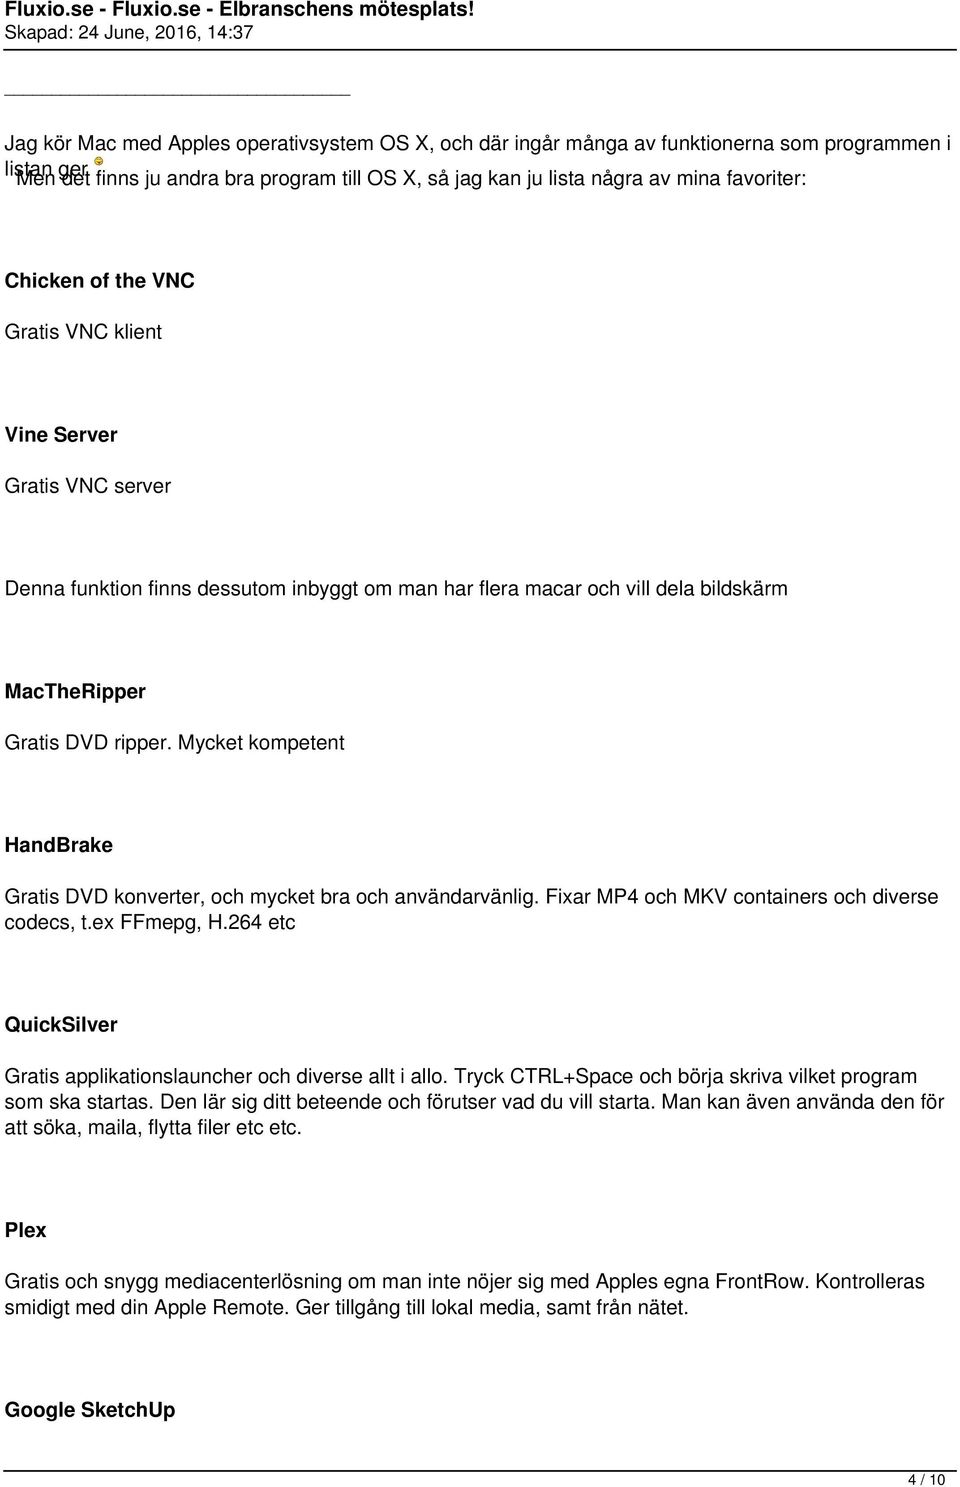 Mycket kompetent HandBrake Gratis DVD konverter, och mycket bra och användarvänlig. Fixar MP4 och MKV containers och diverse codecs, t.ex FFmepg, H.